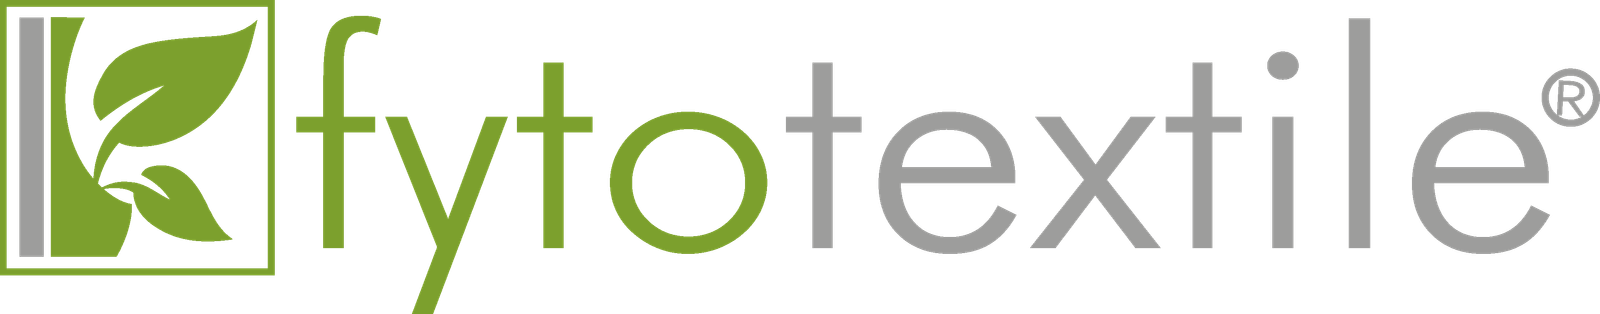 Logo Fytotextile